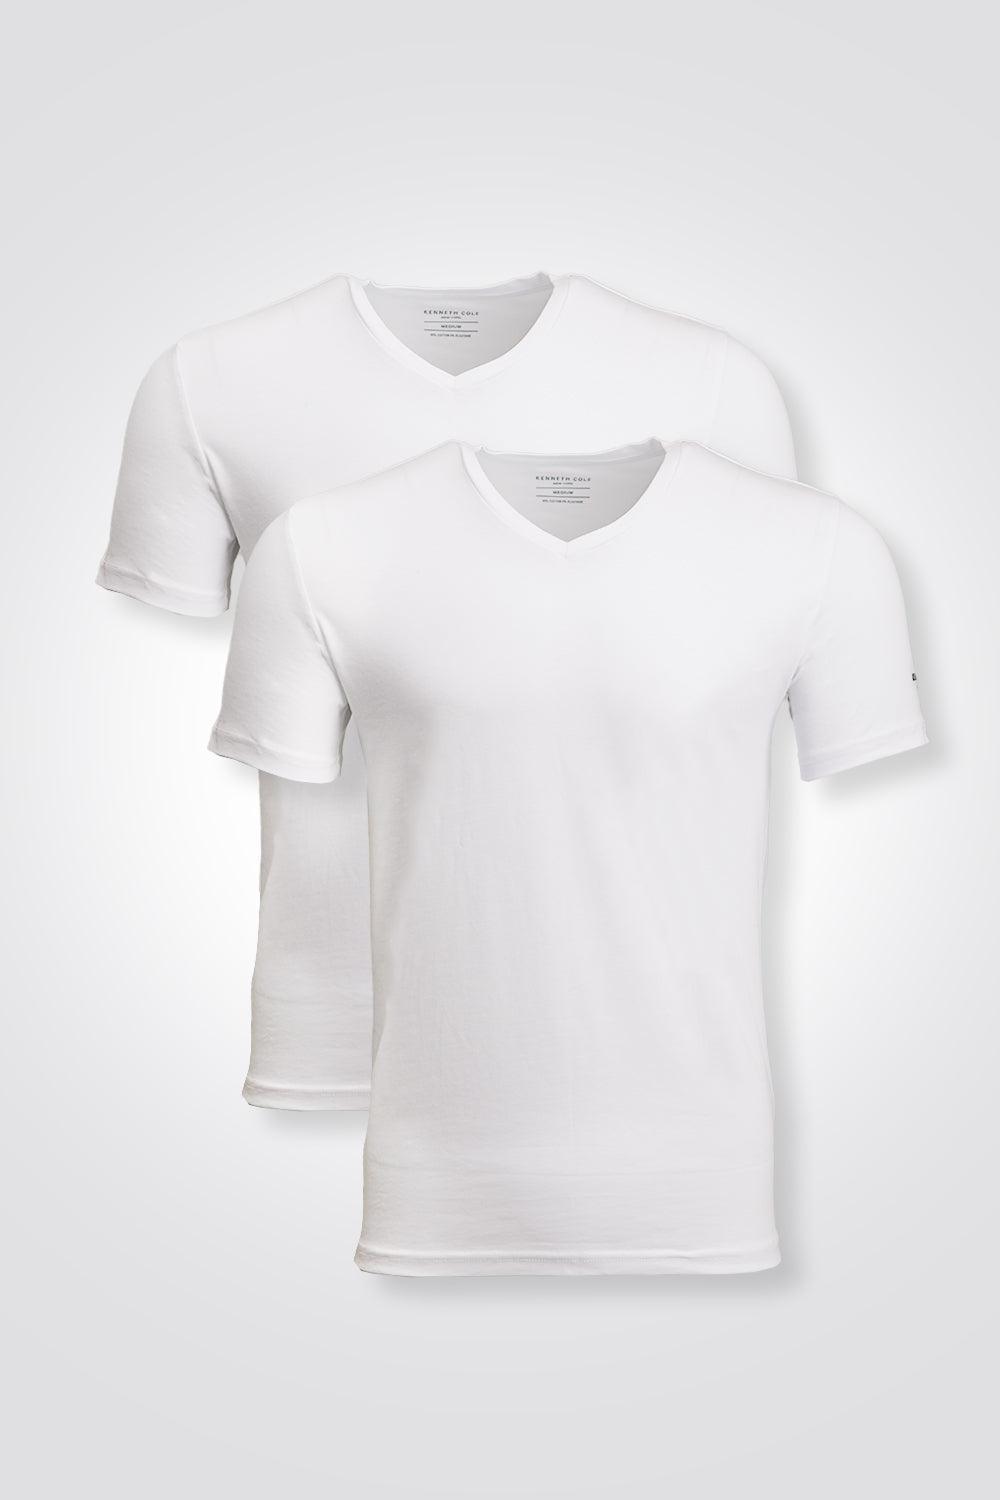 KENNETH COLE - מארז 2 חולצות צווארון V בצבע לבן - MASHBIR//365